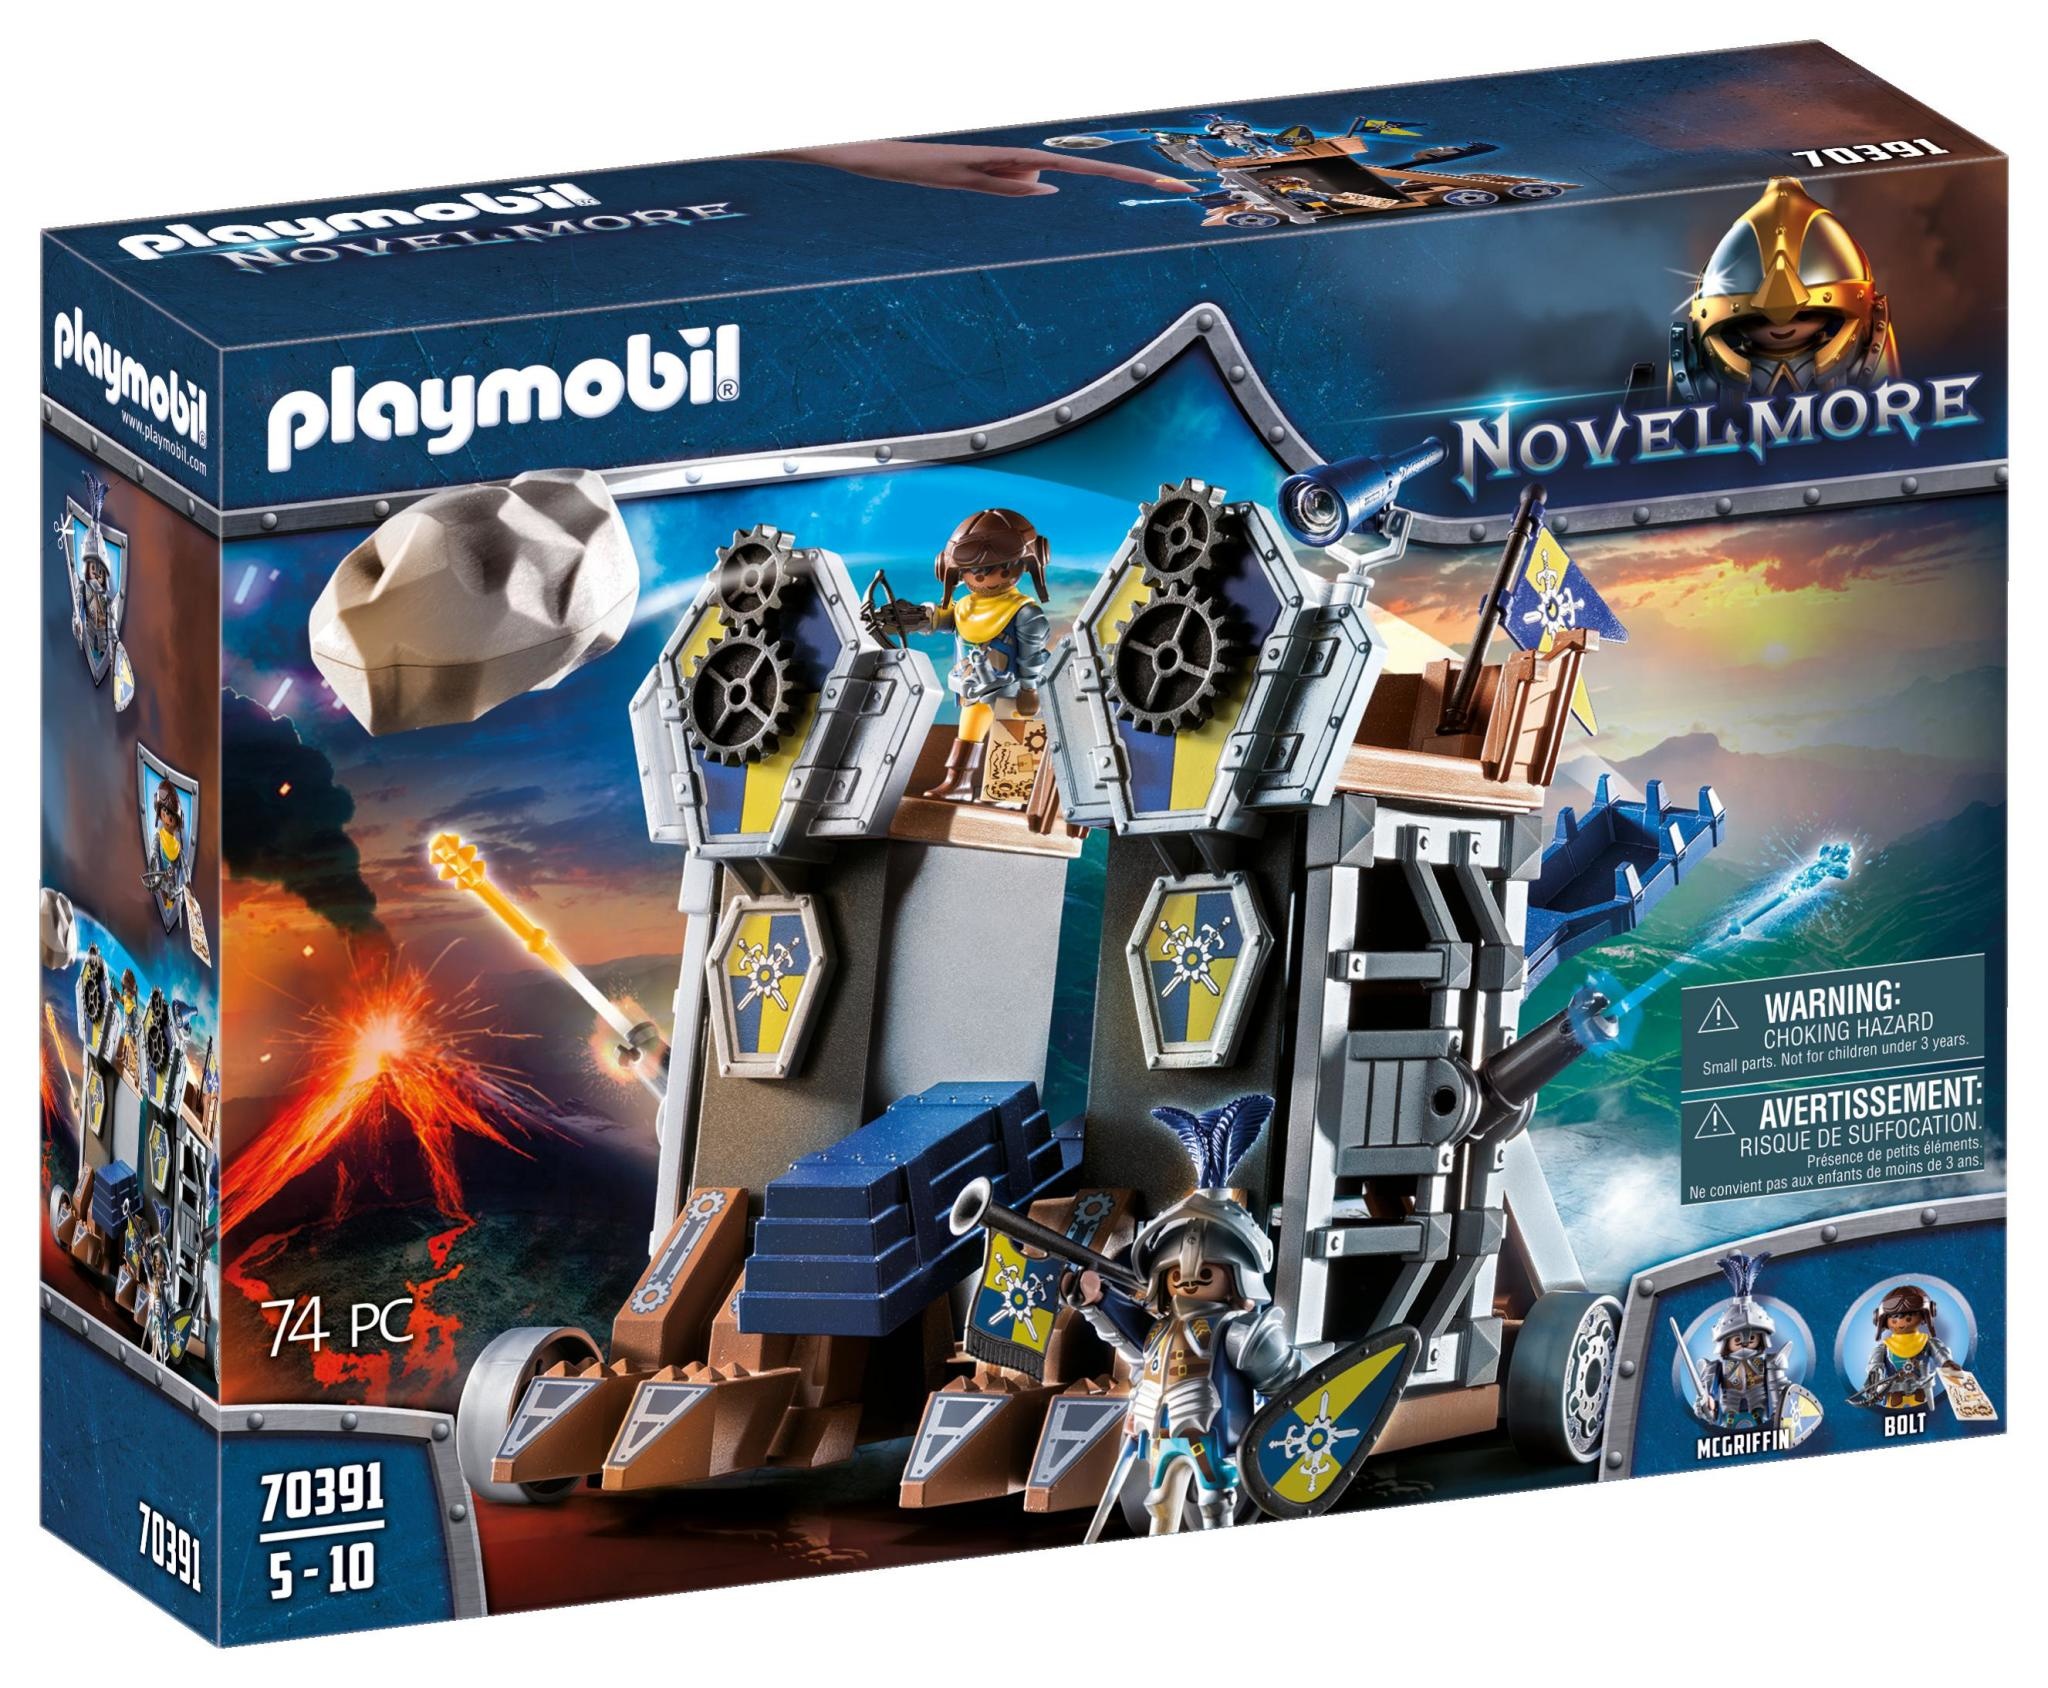 Playmobil Playmobil Novelmore 70391 – Tour d'attaque des chevaliers Novelmore